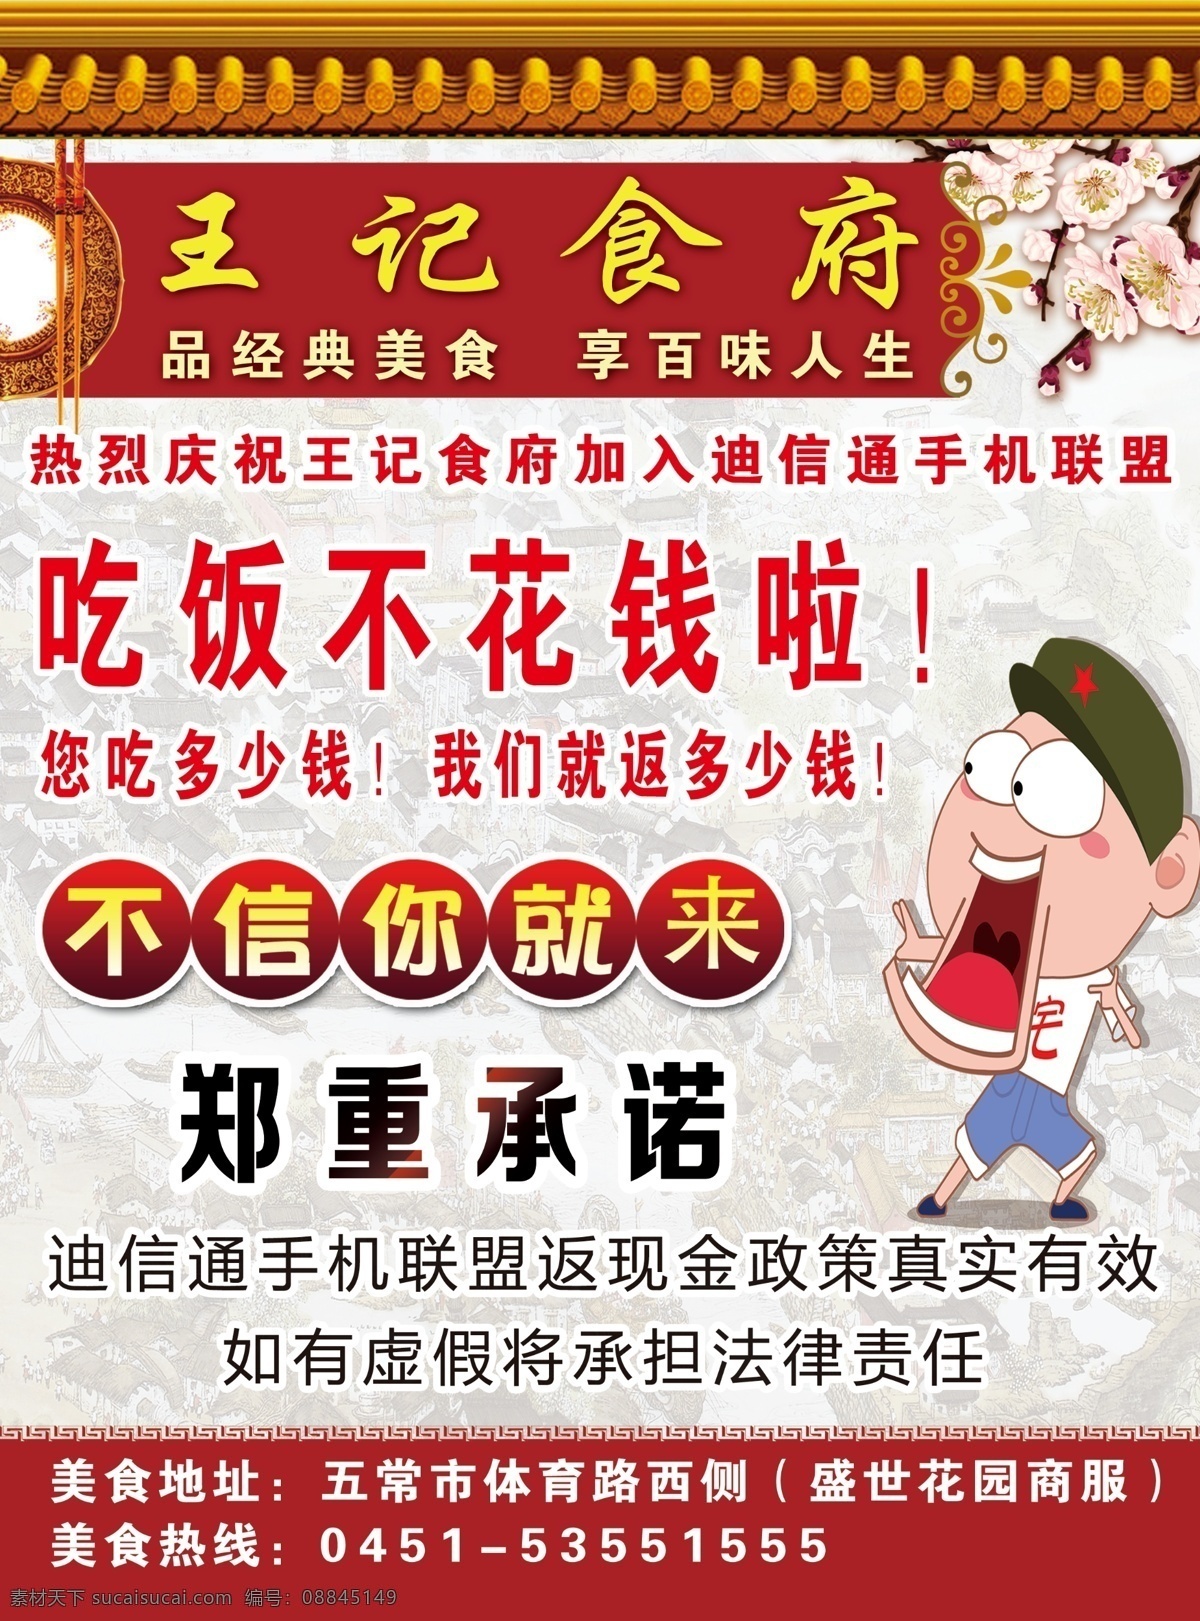 王记食府 王记 食府 盘子 筷子 广告 宣传 海报 不花钱 承诺 卡通